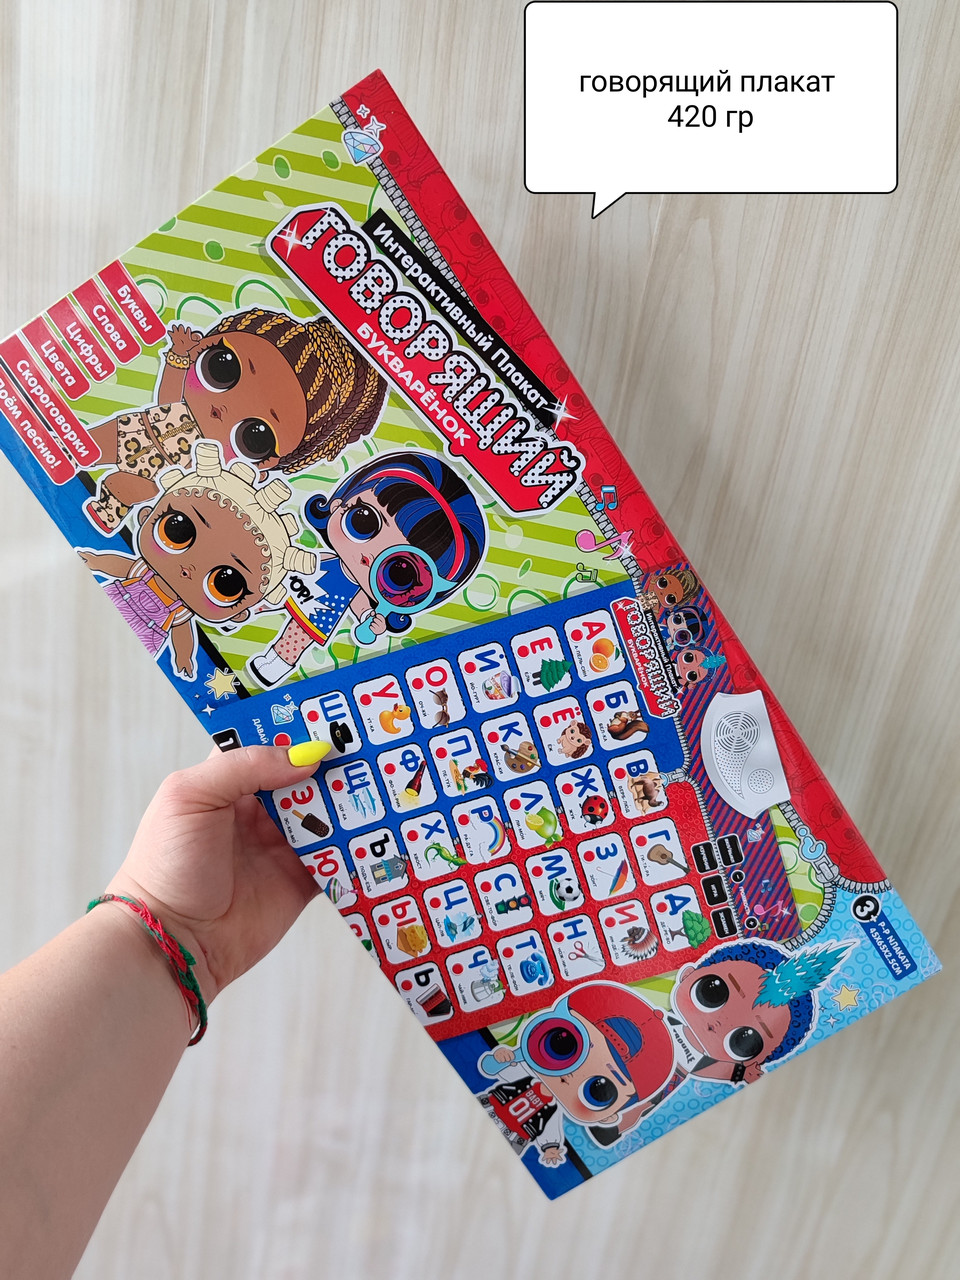 Навчальний плакат Limo Toy  Букваренок - допоможе в ігровій формі дитині вивчити російський алфавіт